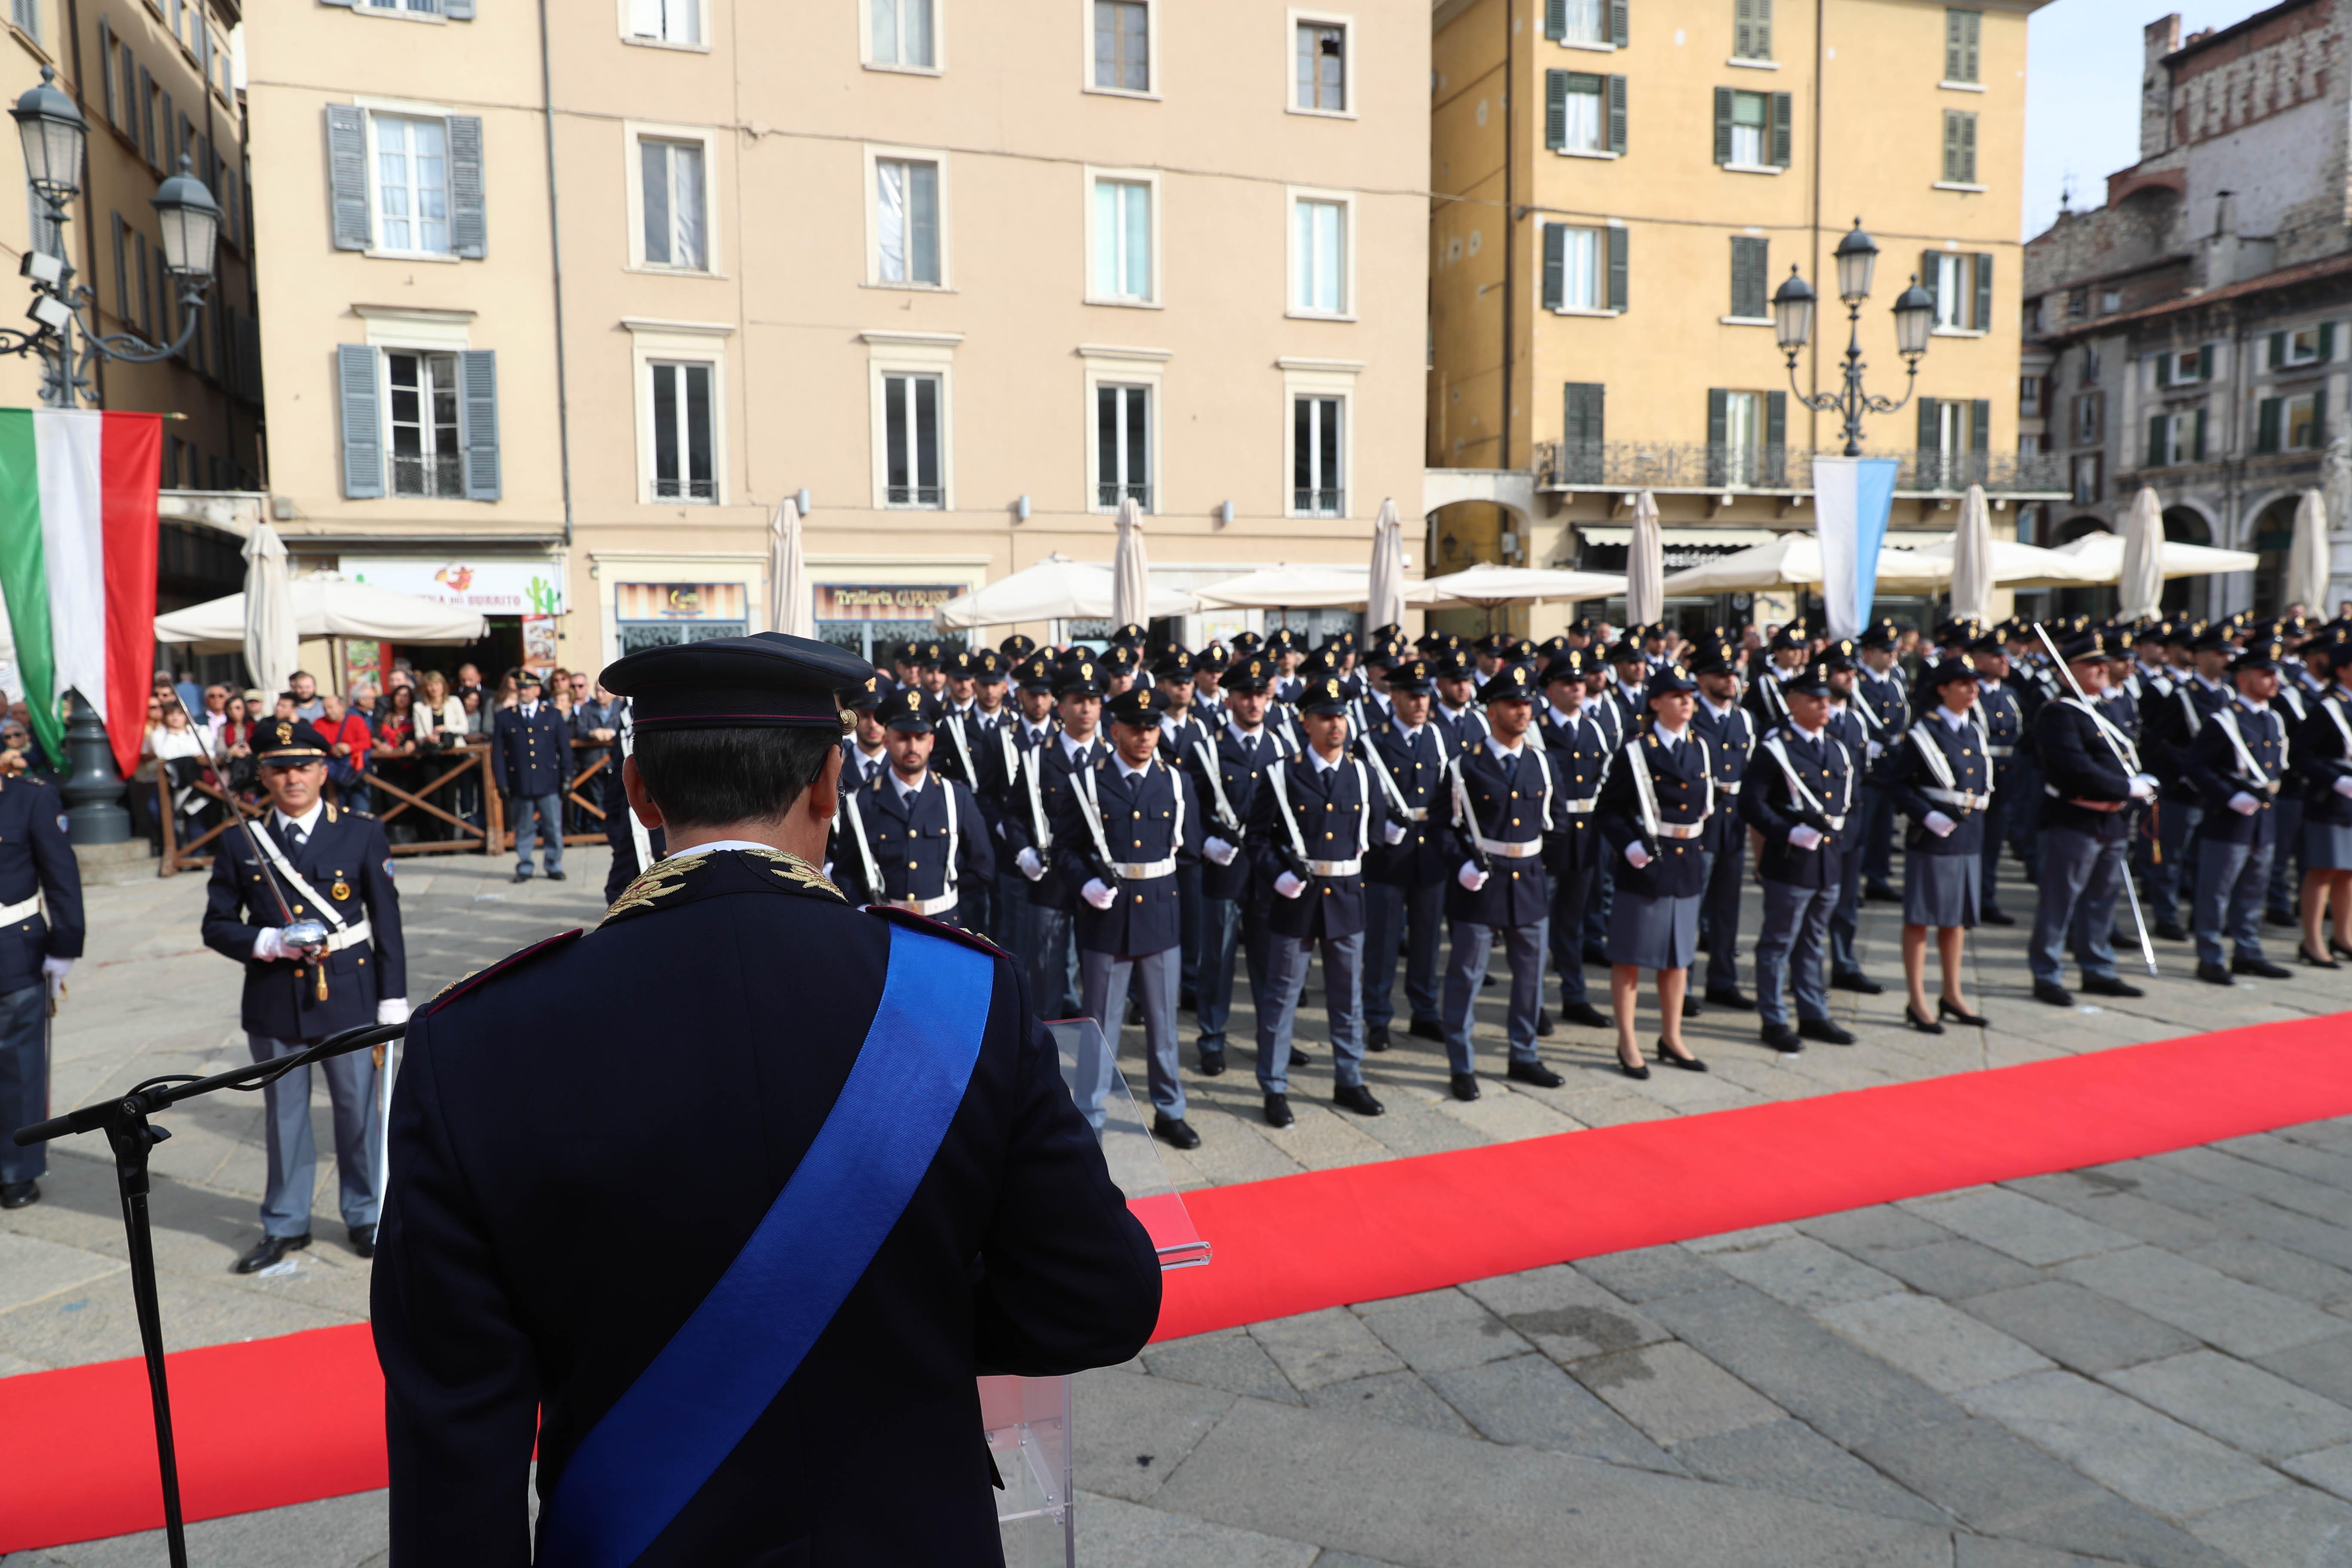 Giuramento 200° corso Allievi Agenti della Polizia di Stato  Piazza Loggia Brescia